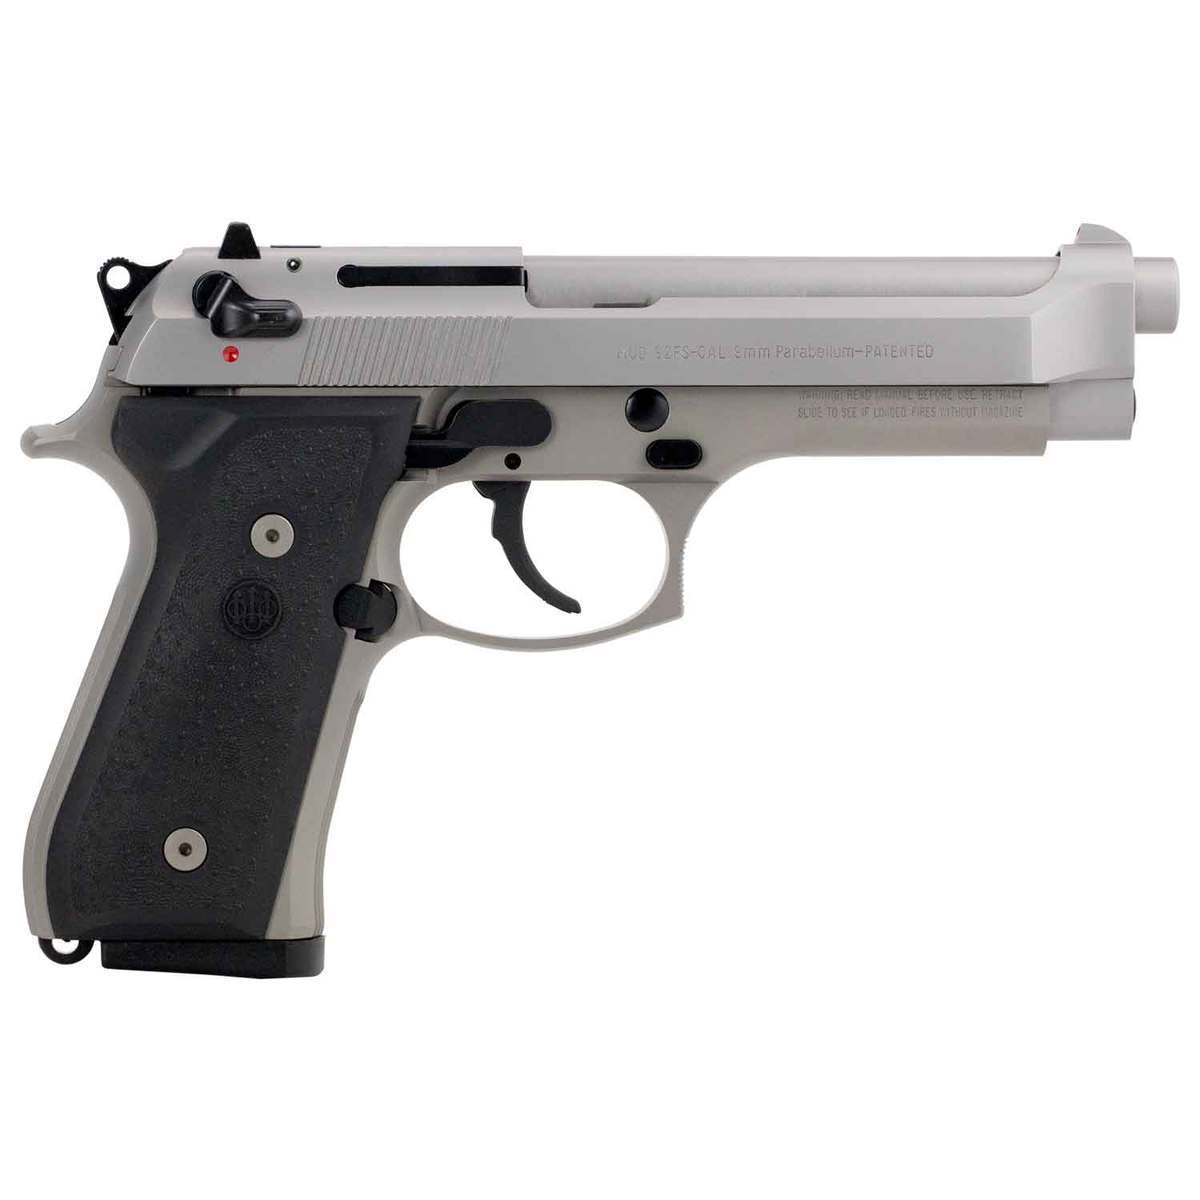 https://www.sportsmans.com/medias/beretta-92-fs-inox-9mm-luger-49in-stainless-pistol-101-rounds-1540797-1.jpg?context=bWFzdGVyfGltYWdlc3w0NzkyMXxpbWFnZS9qcGVnfGltYWdlcy9oNmYvaDZkLzk3MzkyNTY4MjM4MzguanBnfGViNmM2NWRhYmJlZTc0MDg5Y2I1N2Q4M2MwNmFkOTgyZGYwMjI5YjI2OGZiZDJkZTMxYjhiZTZlYTUzZTQxYzI